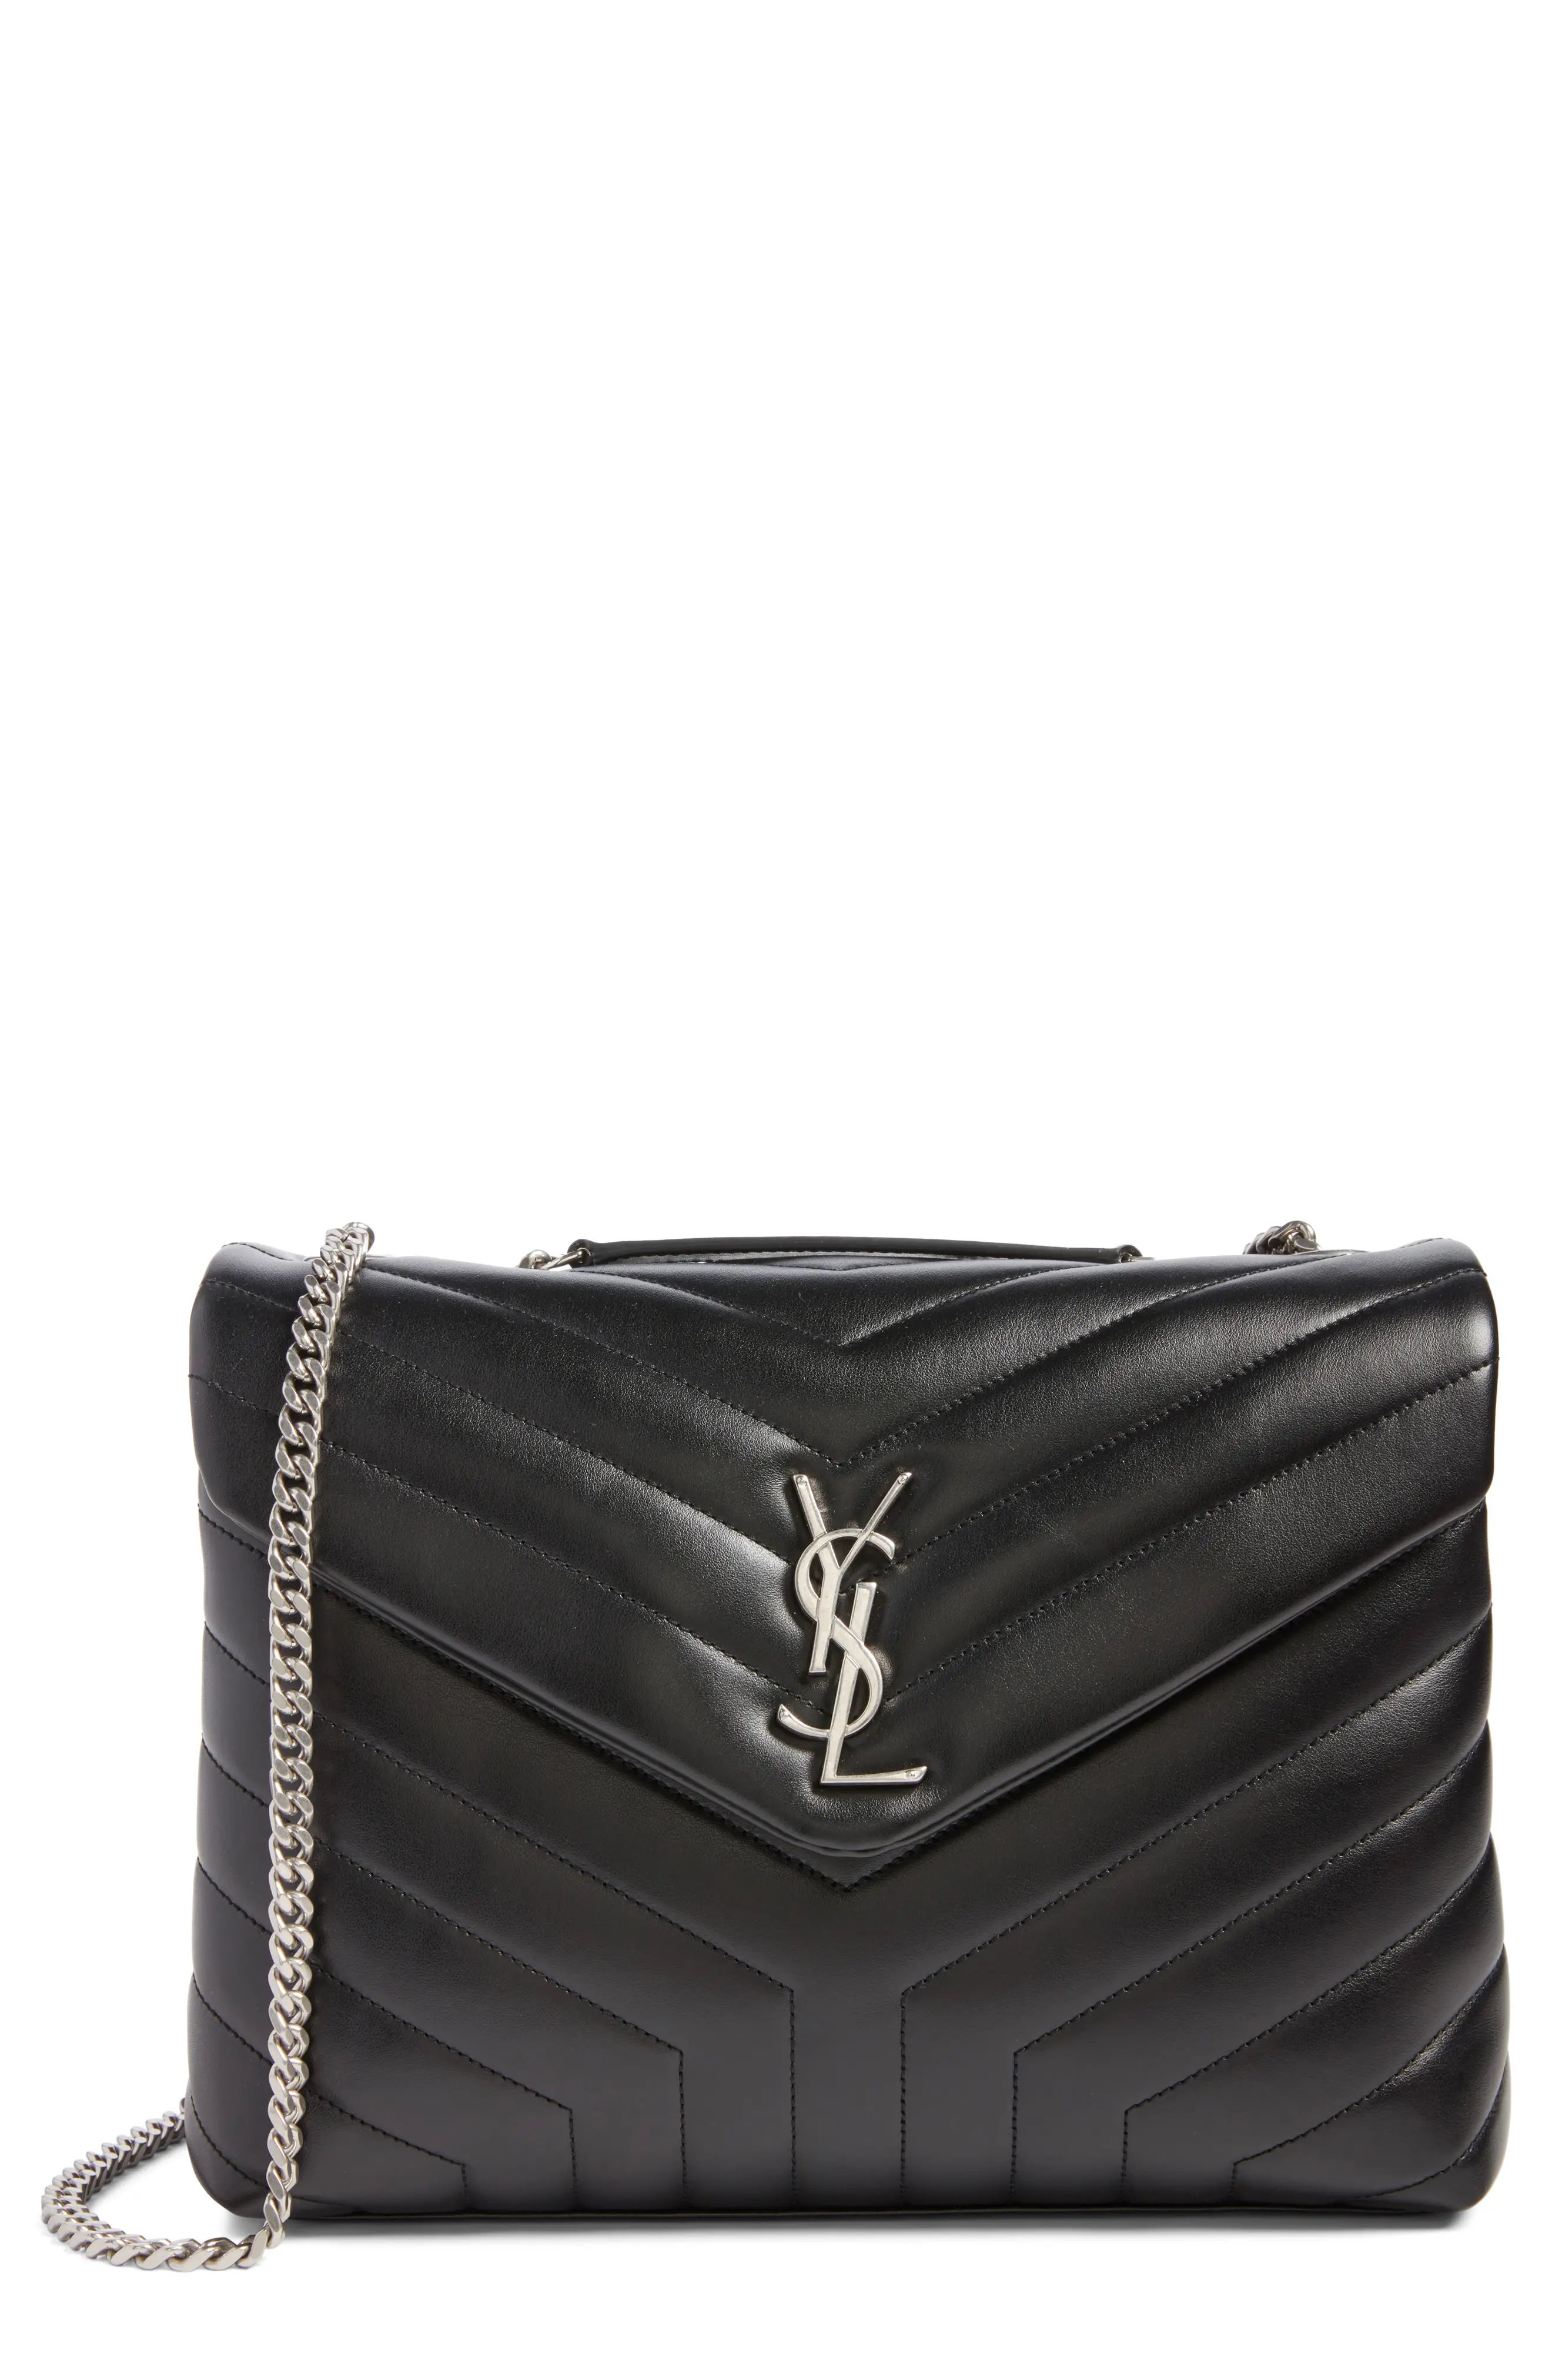 Saint Laurent Medium Loulou Calfskin Leather Shoulder Bag | Nordstrom